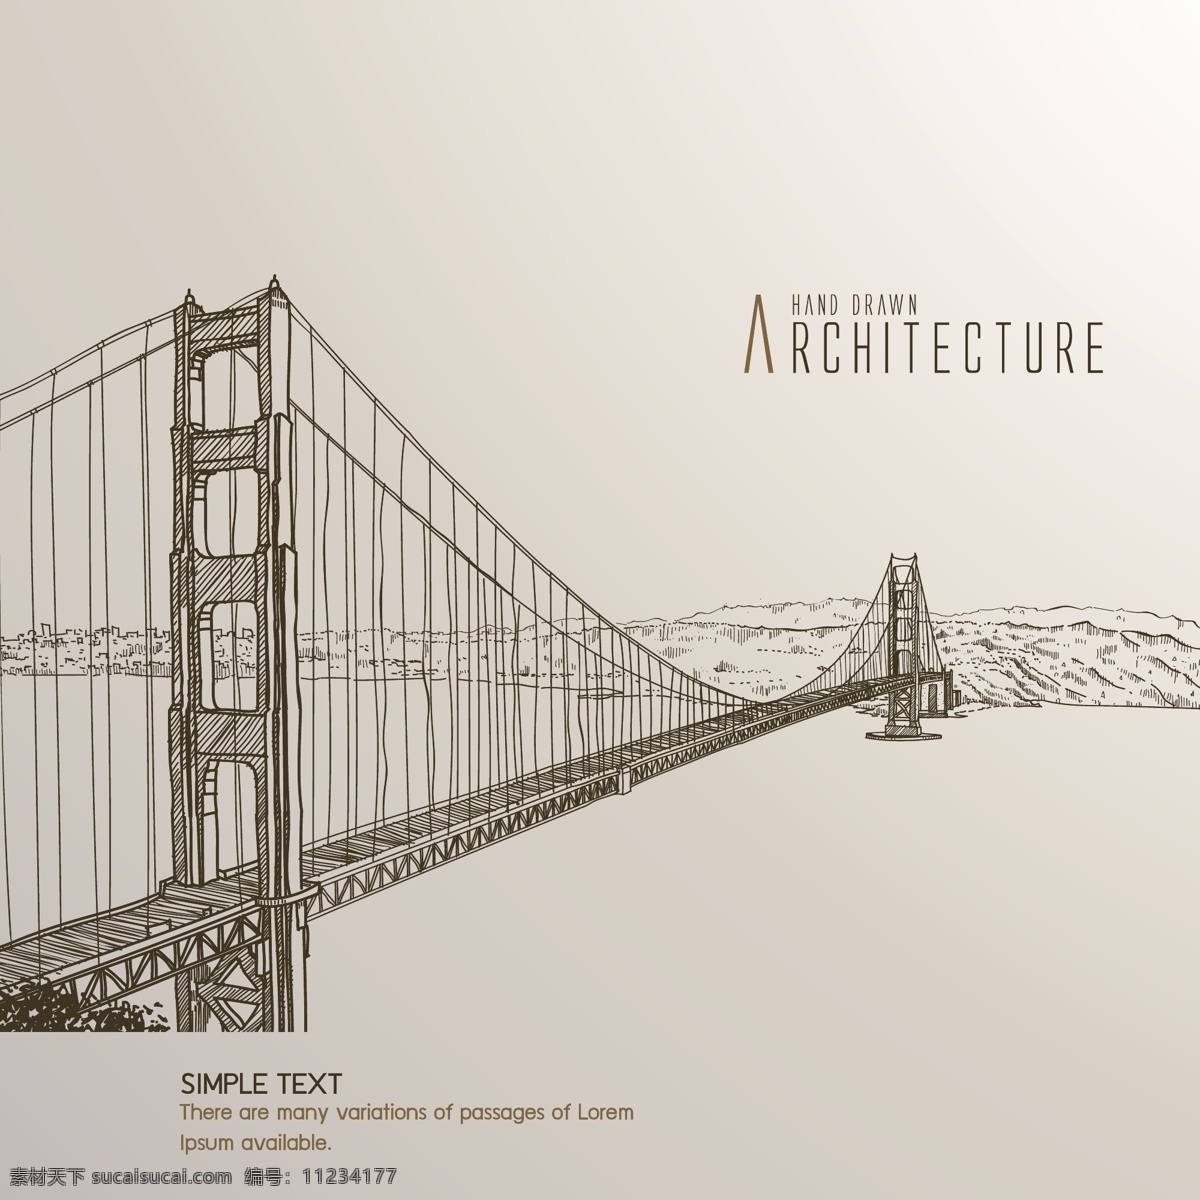 手绘 素描 风格 圣弗朗西斯 科 大桥 素描风格 风景 矢量素材